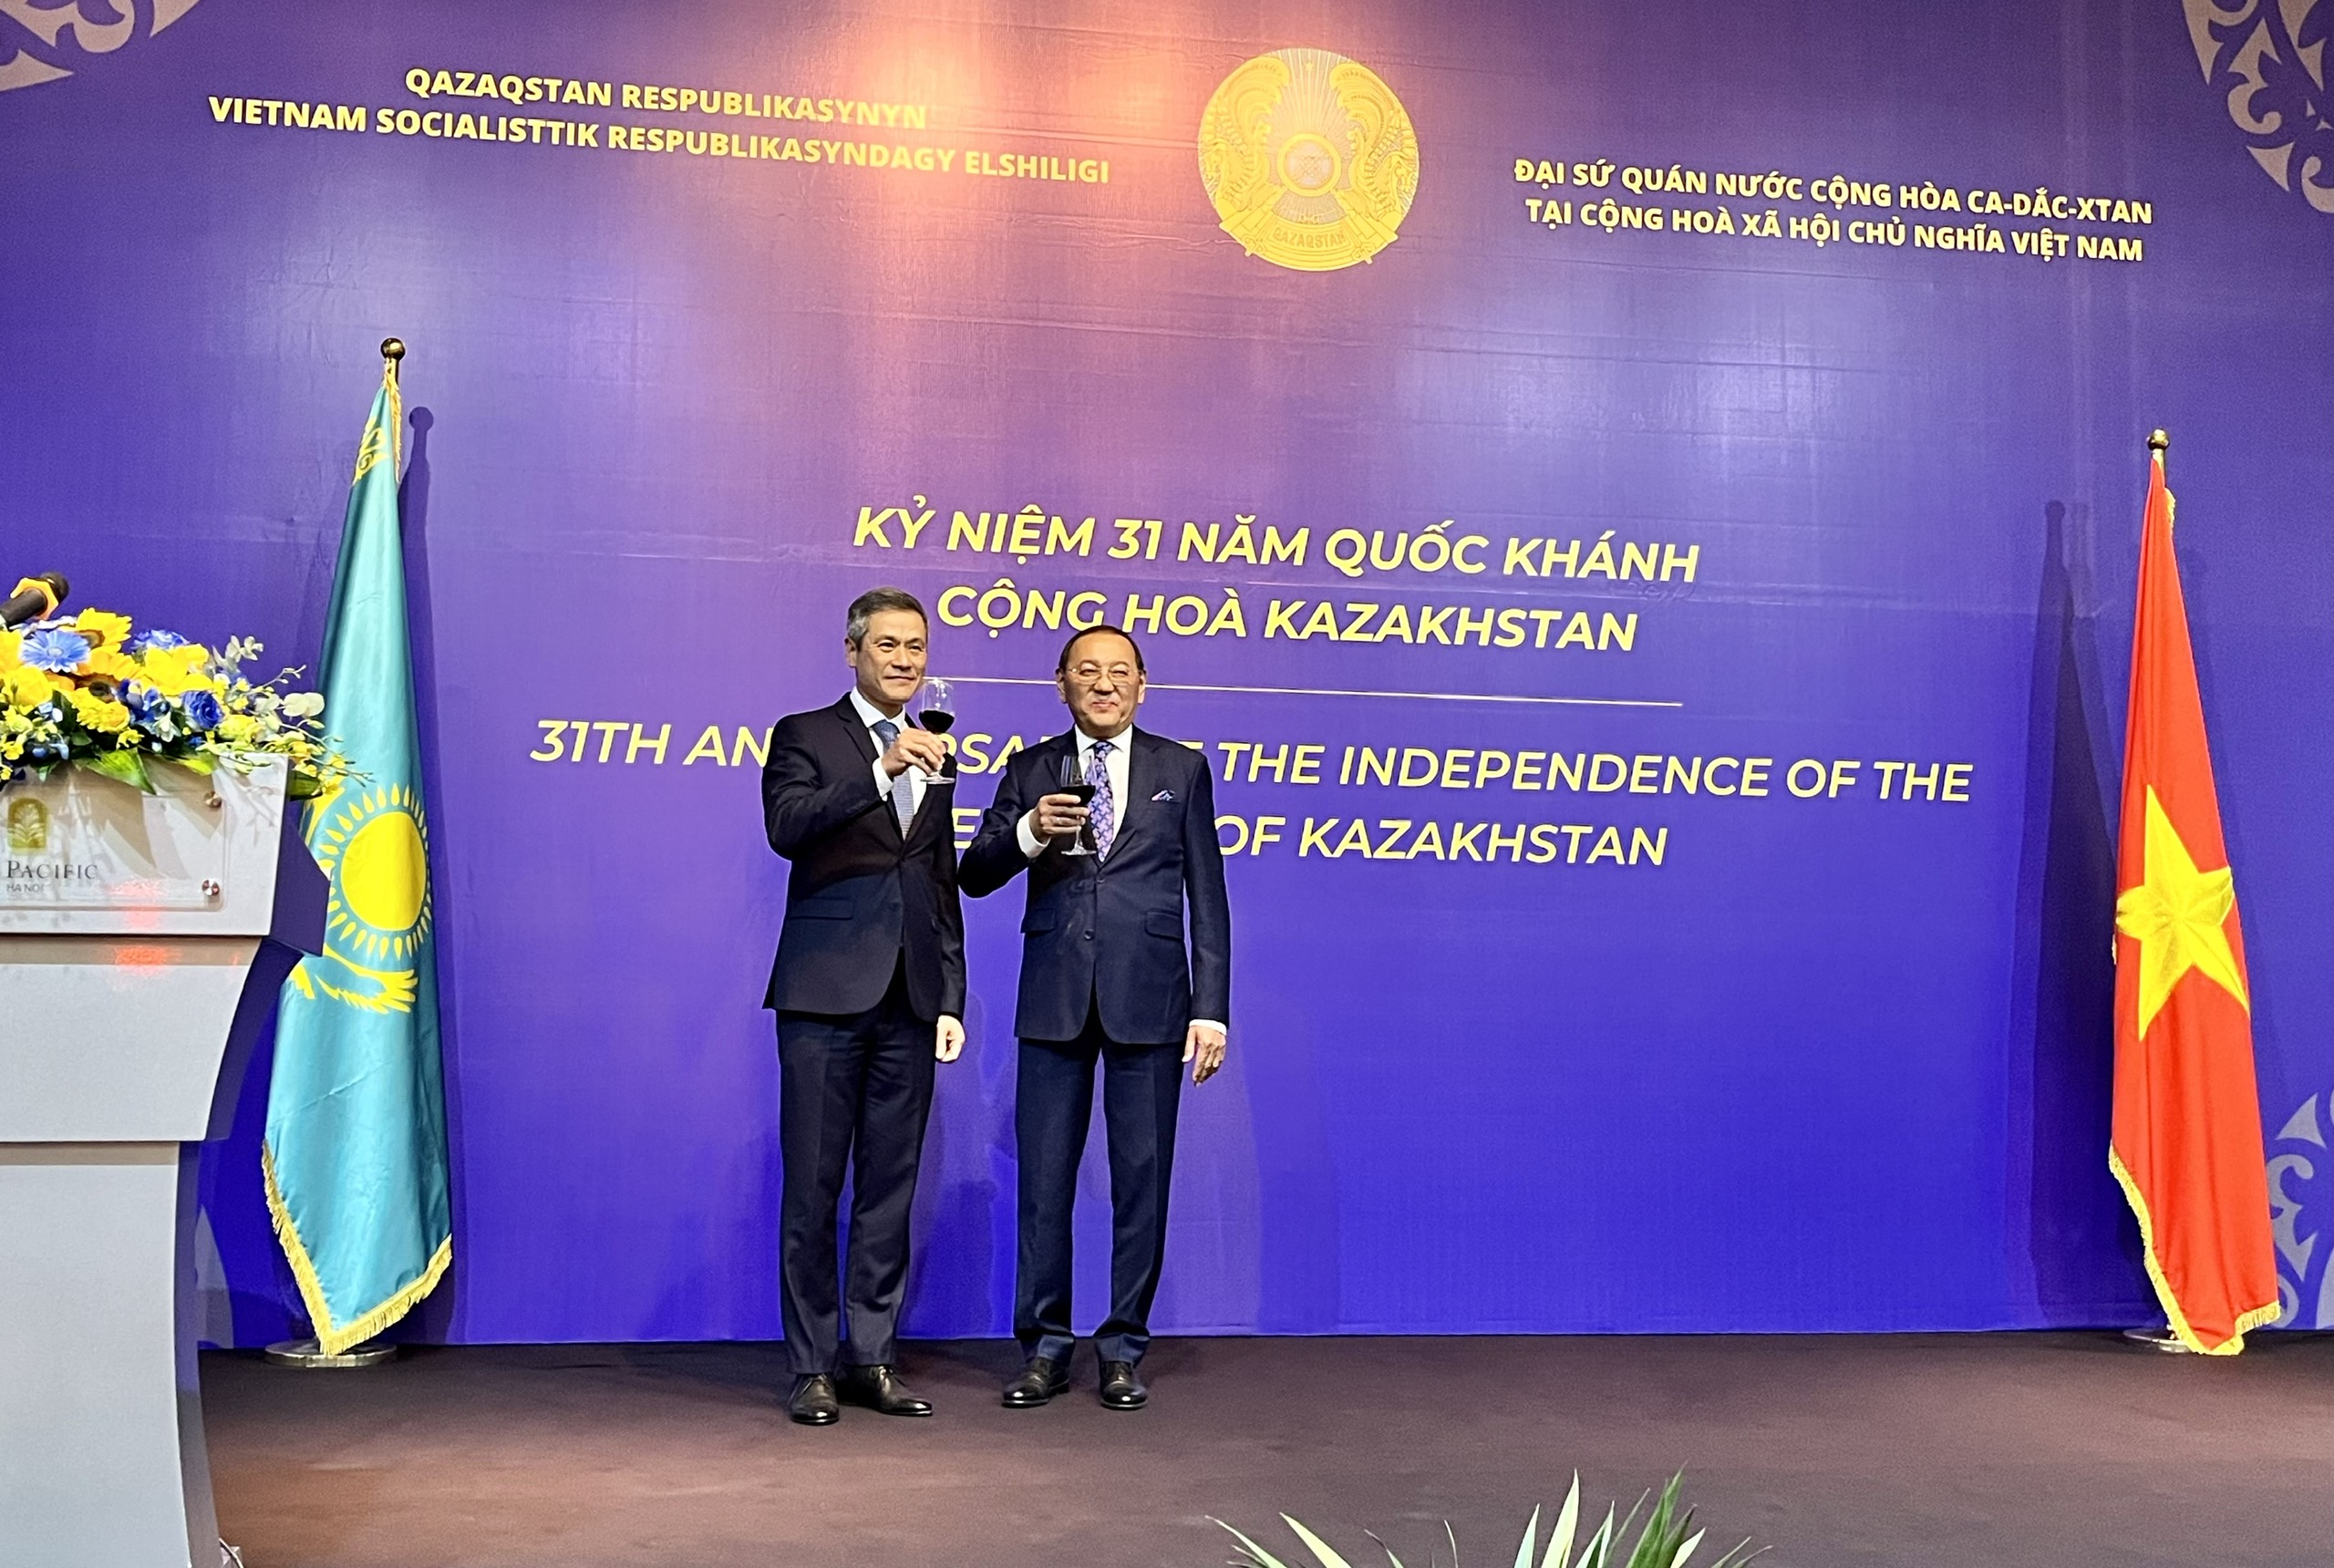 Quan hệ Việt Nam - Kazakhstan: Là một trong những quan hệ đối tác tiềm năng của hai quốc gia trong nhiều lĩnh vực khác nhau, đặc biệt là kinh tế và thương mại. Đón xem những hình ảnh khác nhau của cuộc gặp gỡ giữa lãnh đạo hai nước.